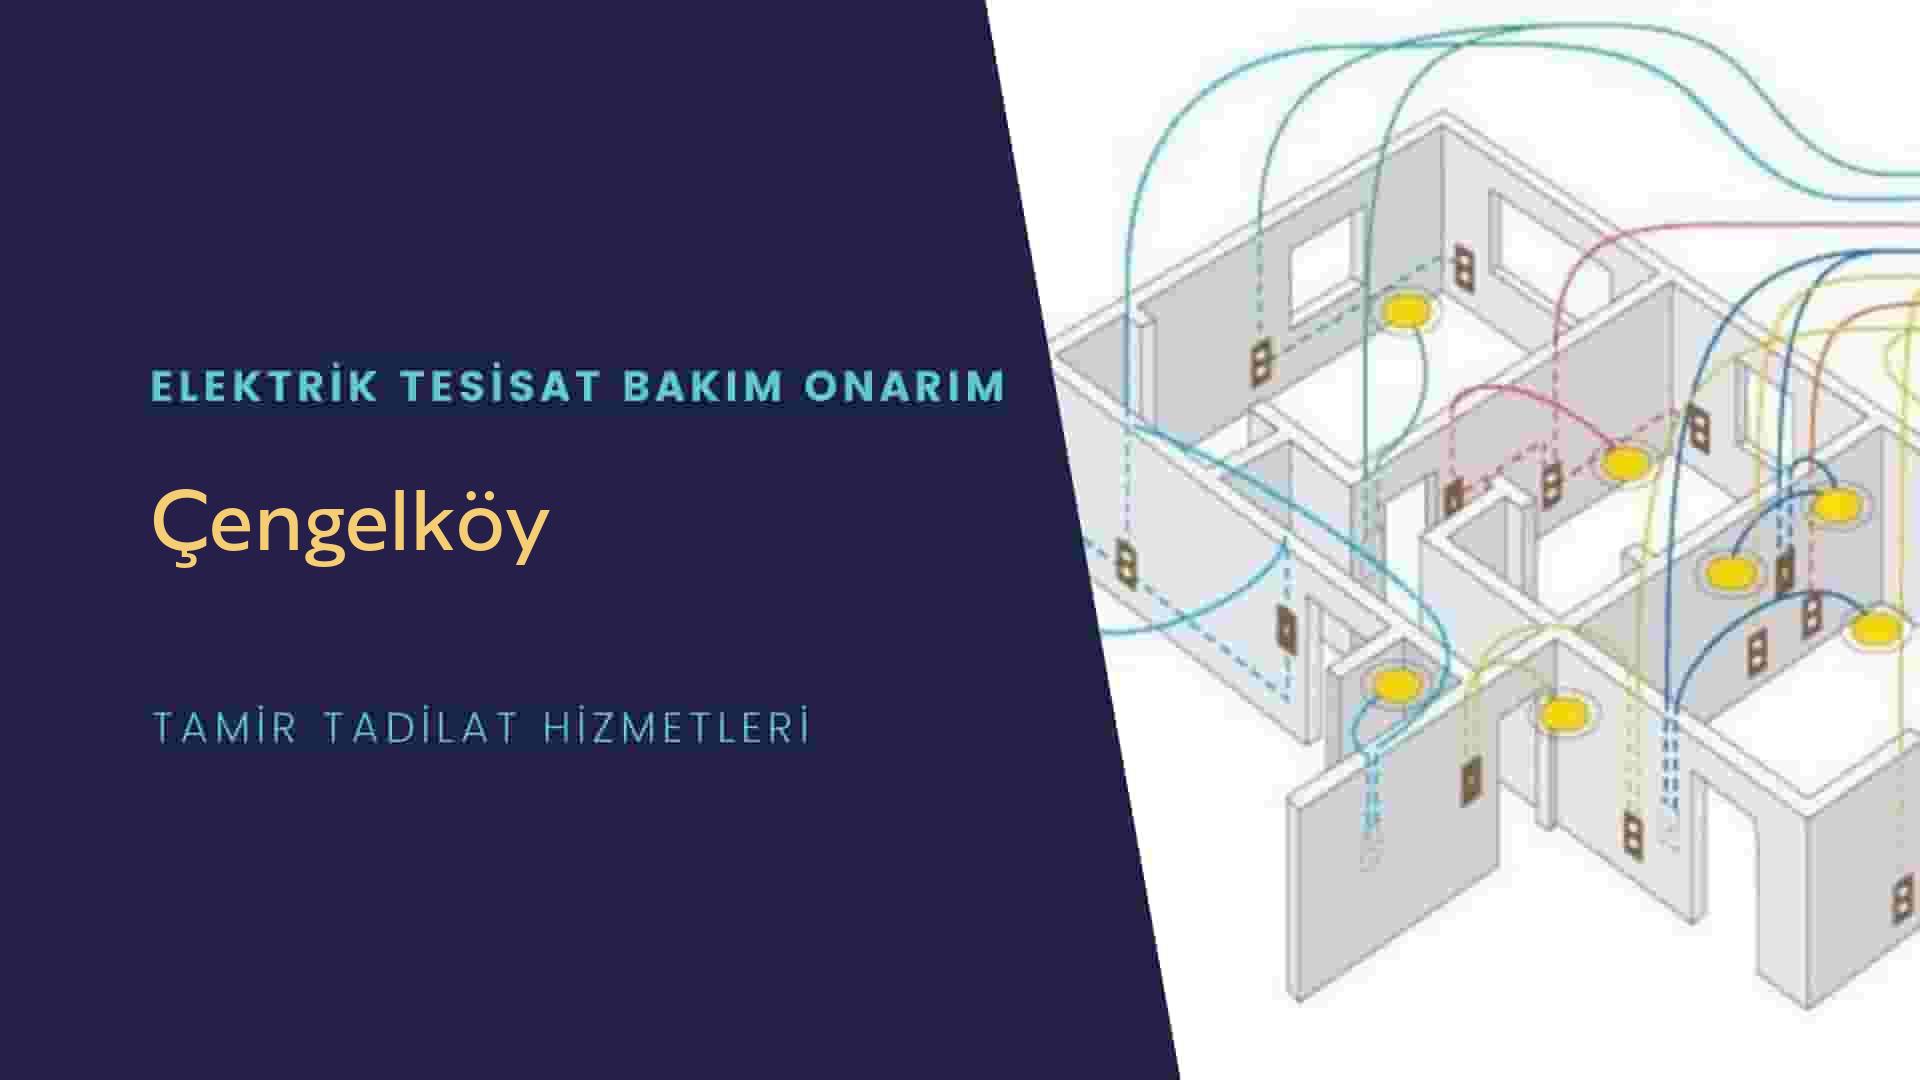 Çengelköy'de elektrik tesisatı ustalarımı arıyorsunuz doğru adrestenizi Çengelköy elektrik tesisatı ustalarımız 7/24 sizlere hizmet vermekten mutluluk duyar.